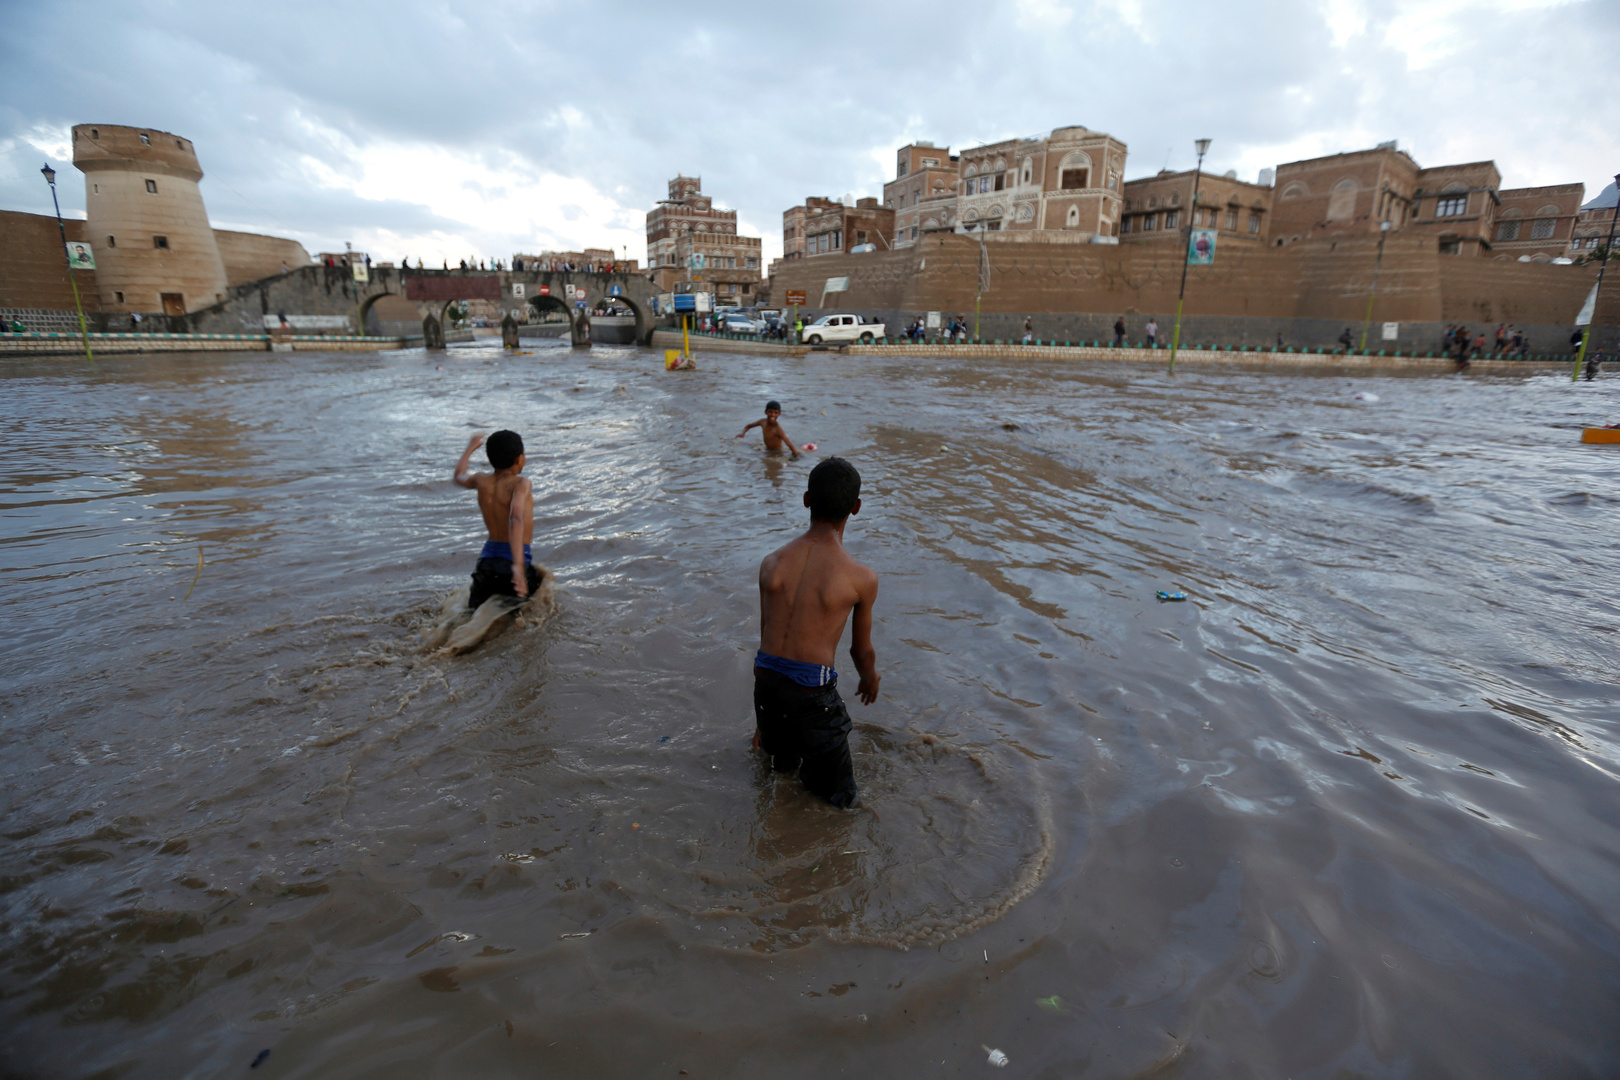 أمطار غزيرة تلحق أضرارا جسيمة بمدينة تريم اليمنية التاريخية